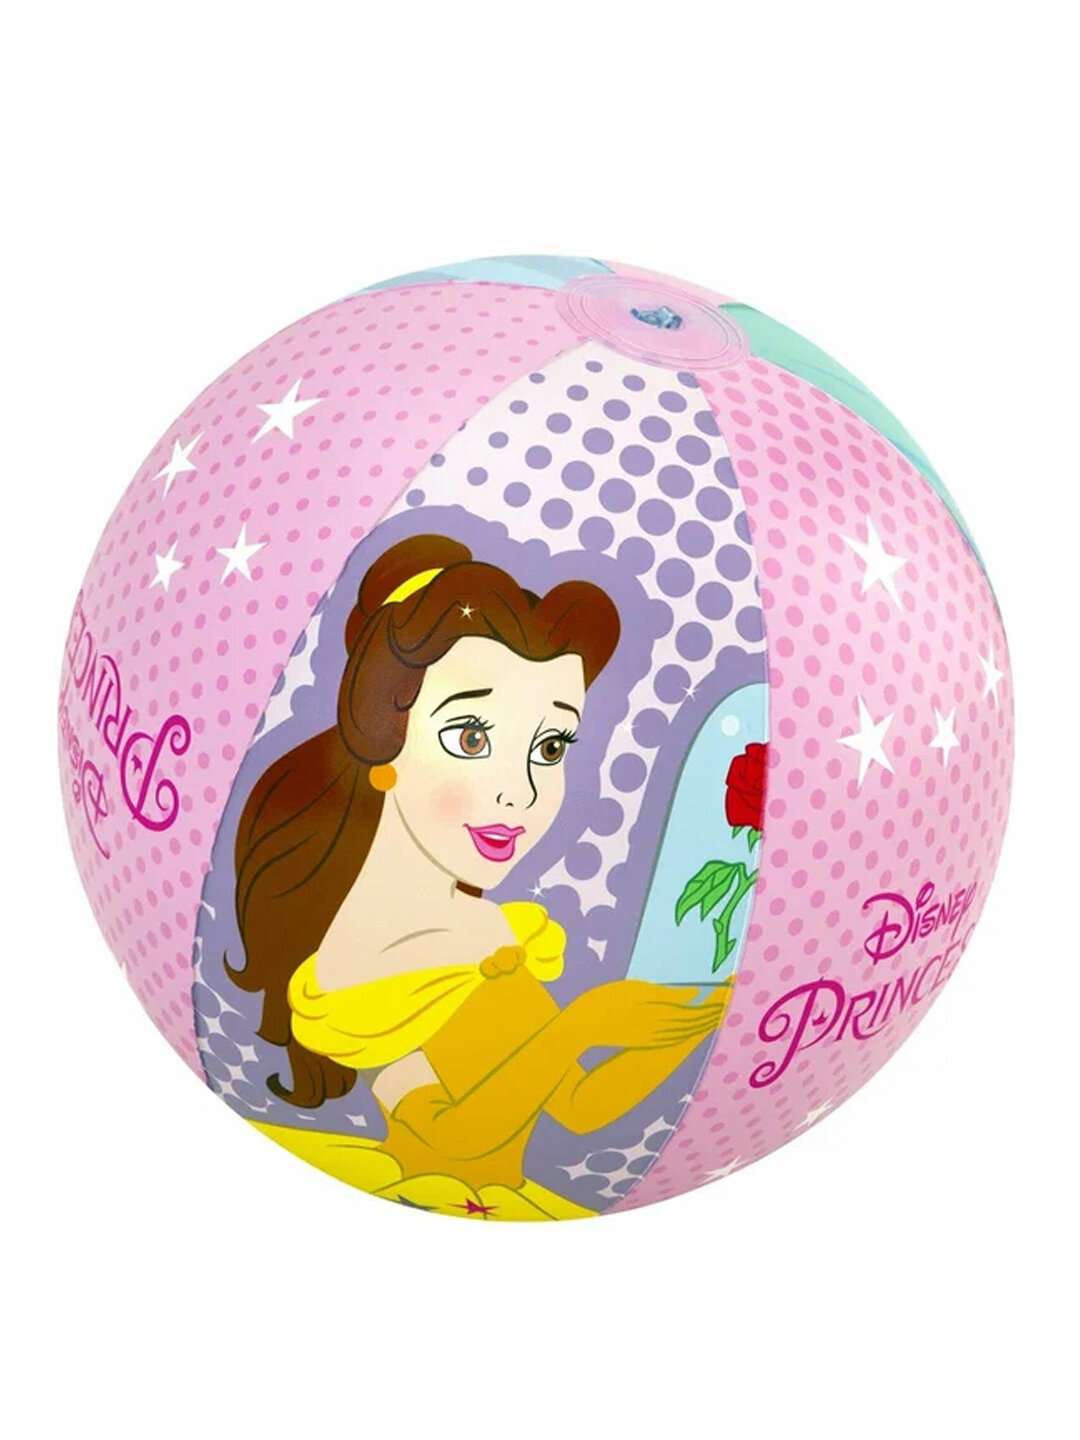 Мяч пляжный 51см, Disney Princess